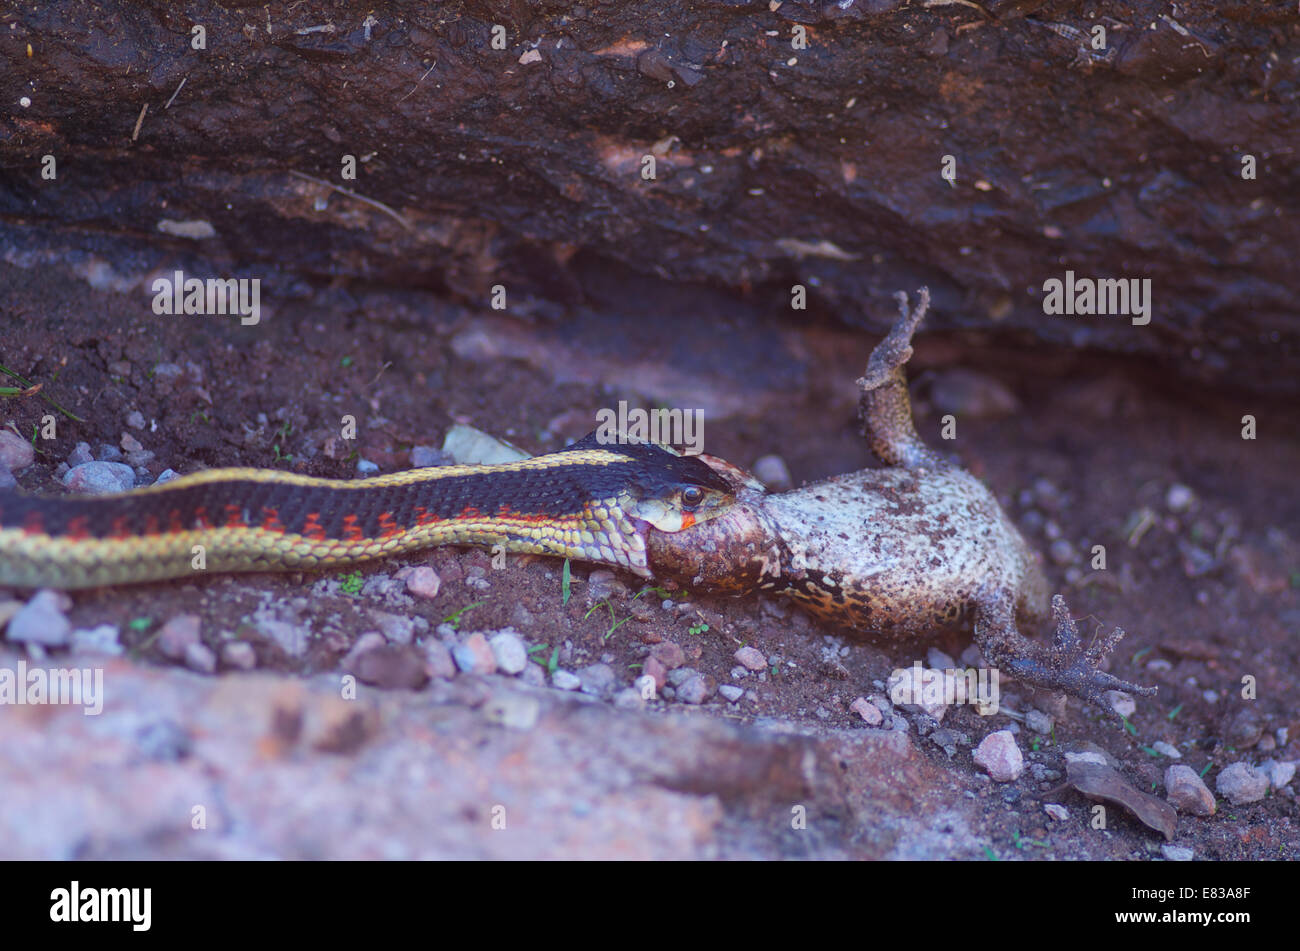 A Valley Gartersnake swallowing a California Red-legged Frog at Pinnacles National Park, San Benito County, California. Stock Photo